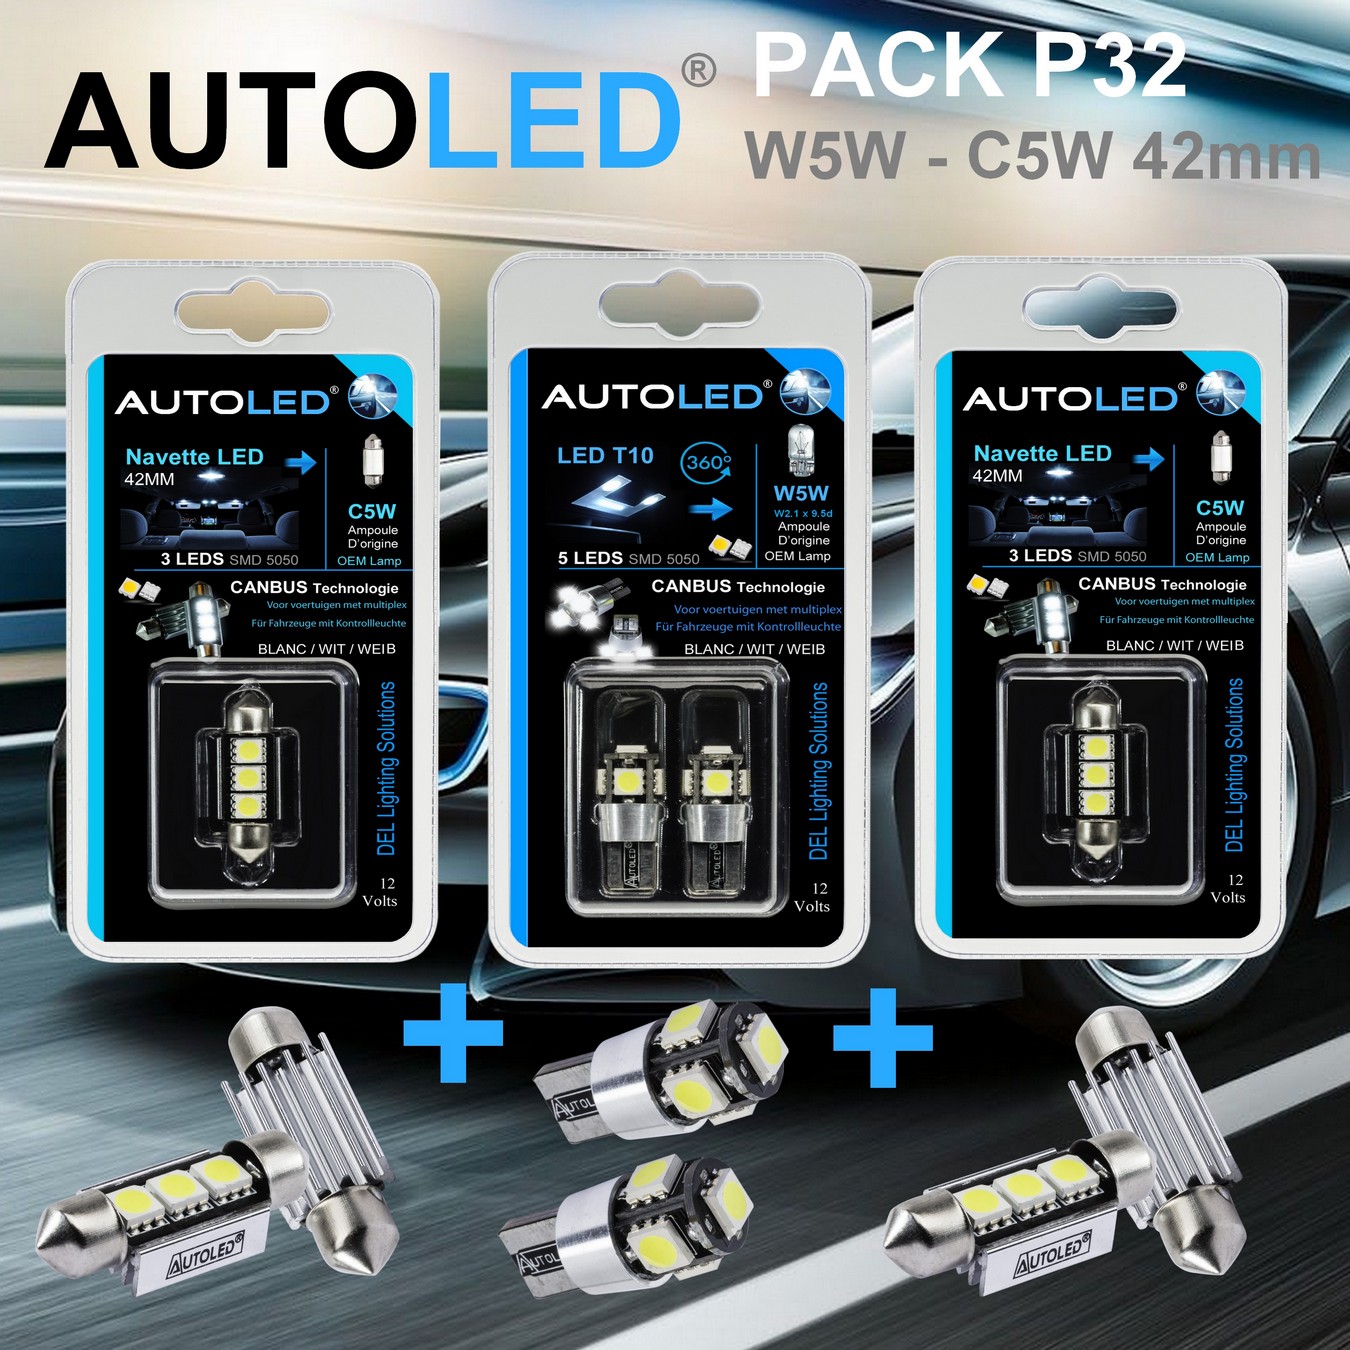 Pack-4-ampoules-led-canbus-blanc-habitacle-plafonnier-feux-de position-coffre-w5w-t10-5leds-smd-5050-canbus-navette-42mm-c5w-c10w-3leds-blanc-eclairage-led-autoled-pack-p32.2